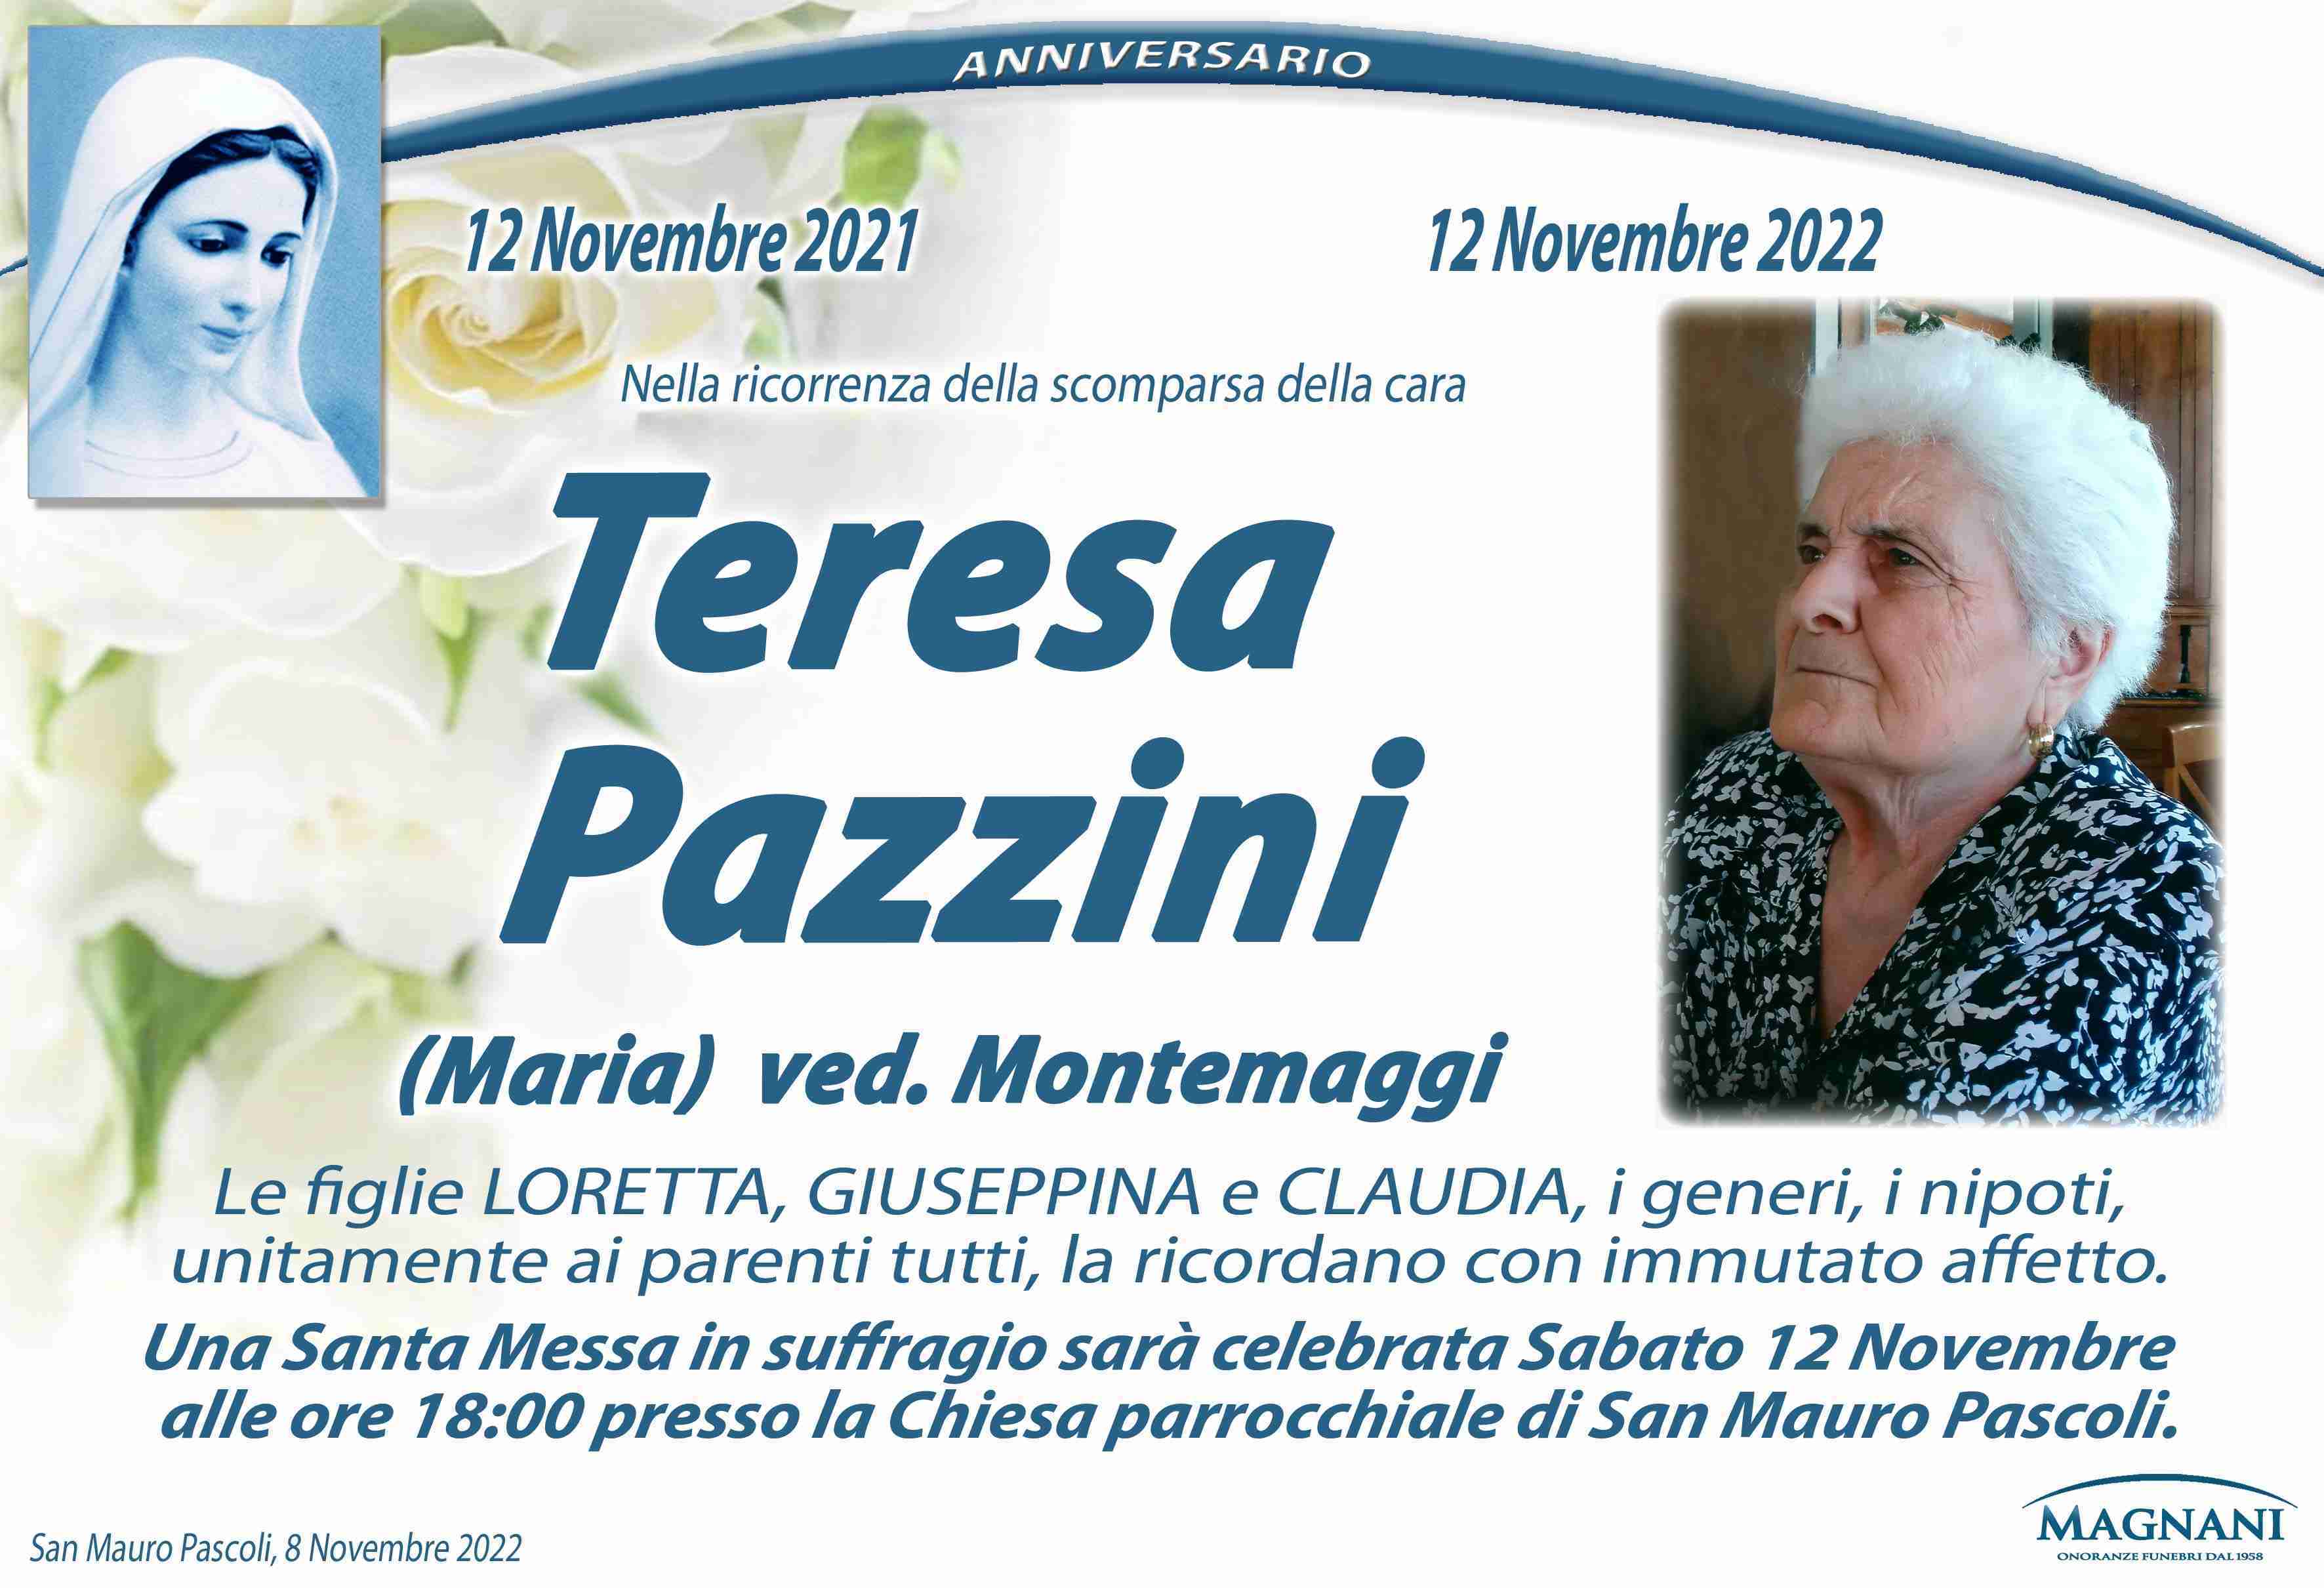 Teresa Pazzini